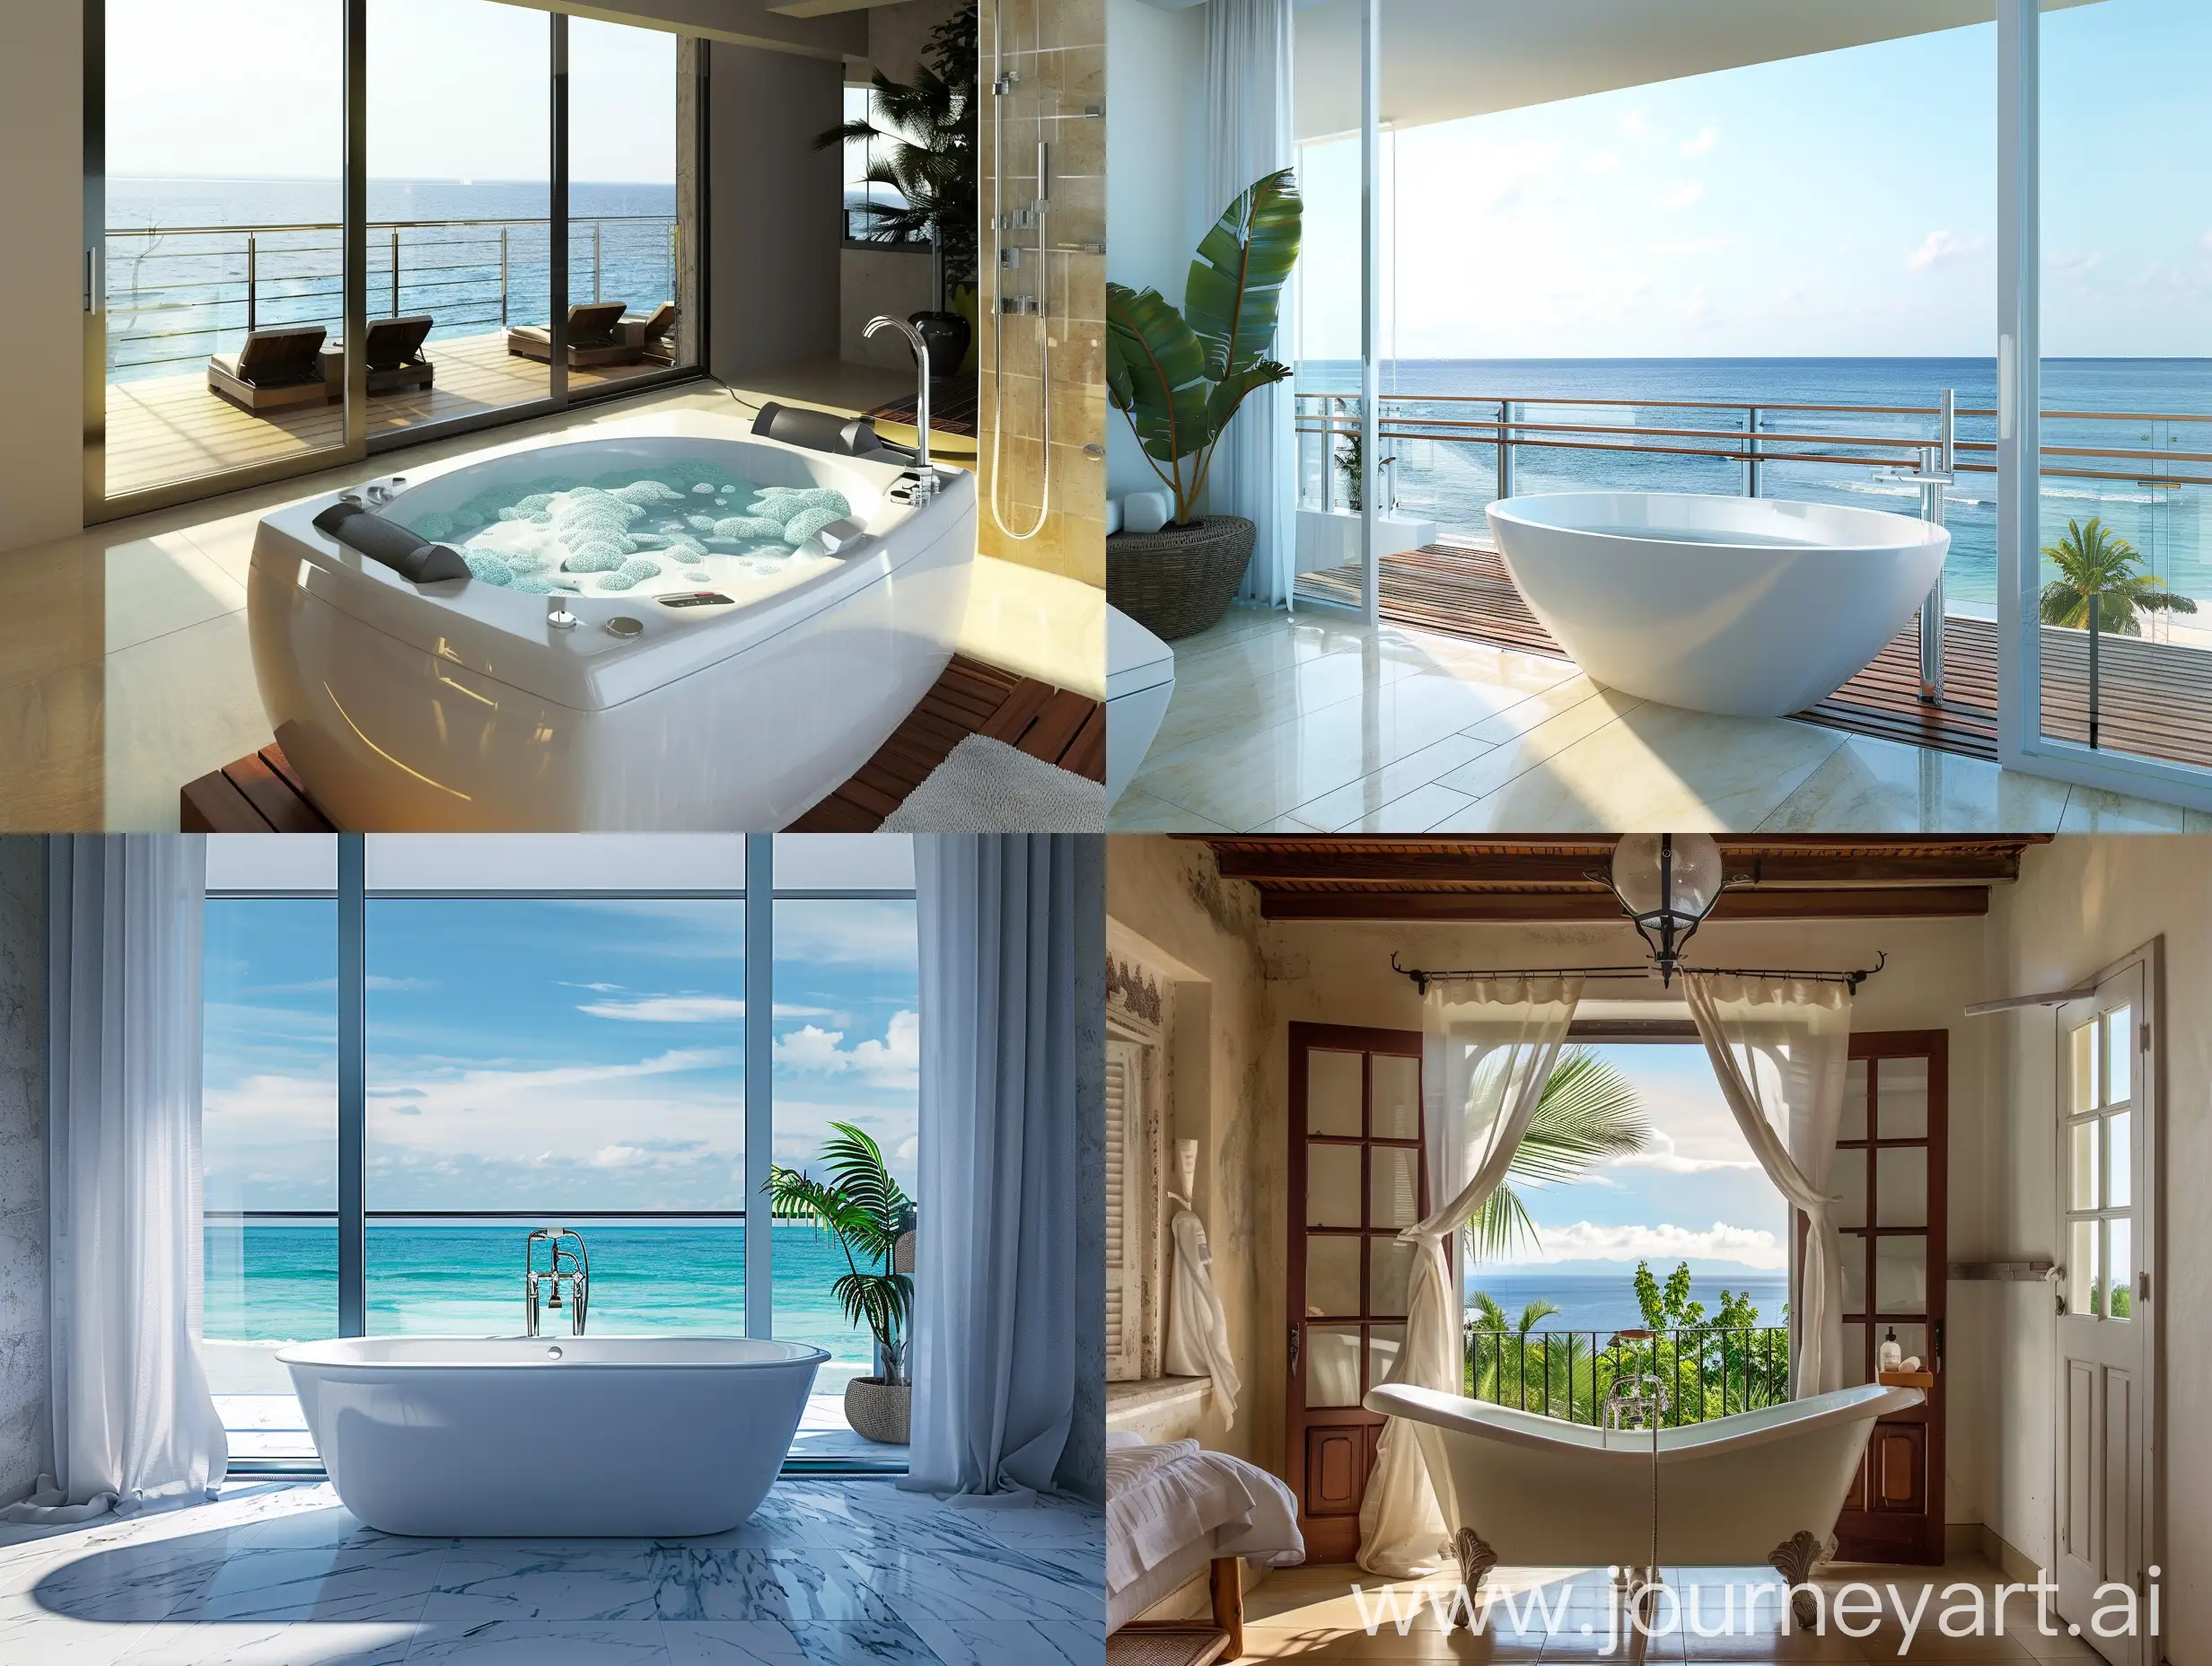 Sea view bathtub with balcony